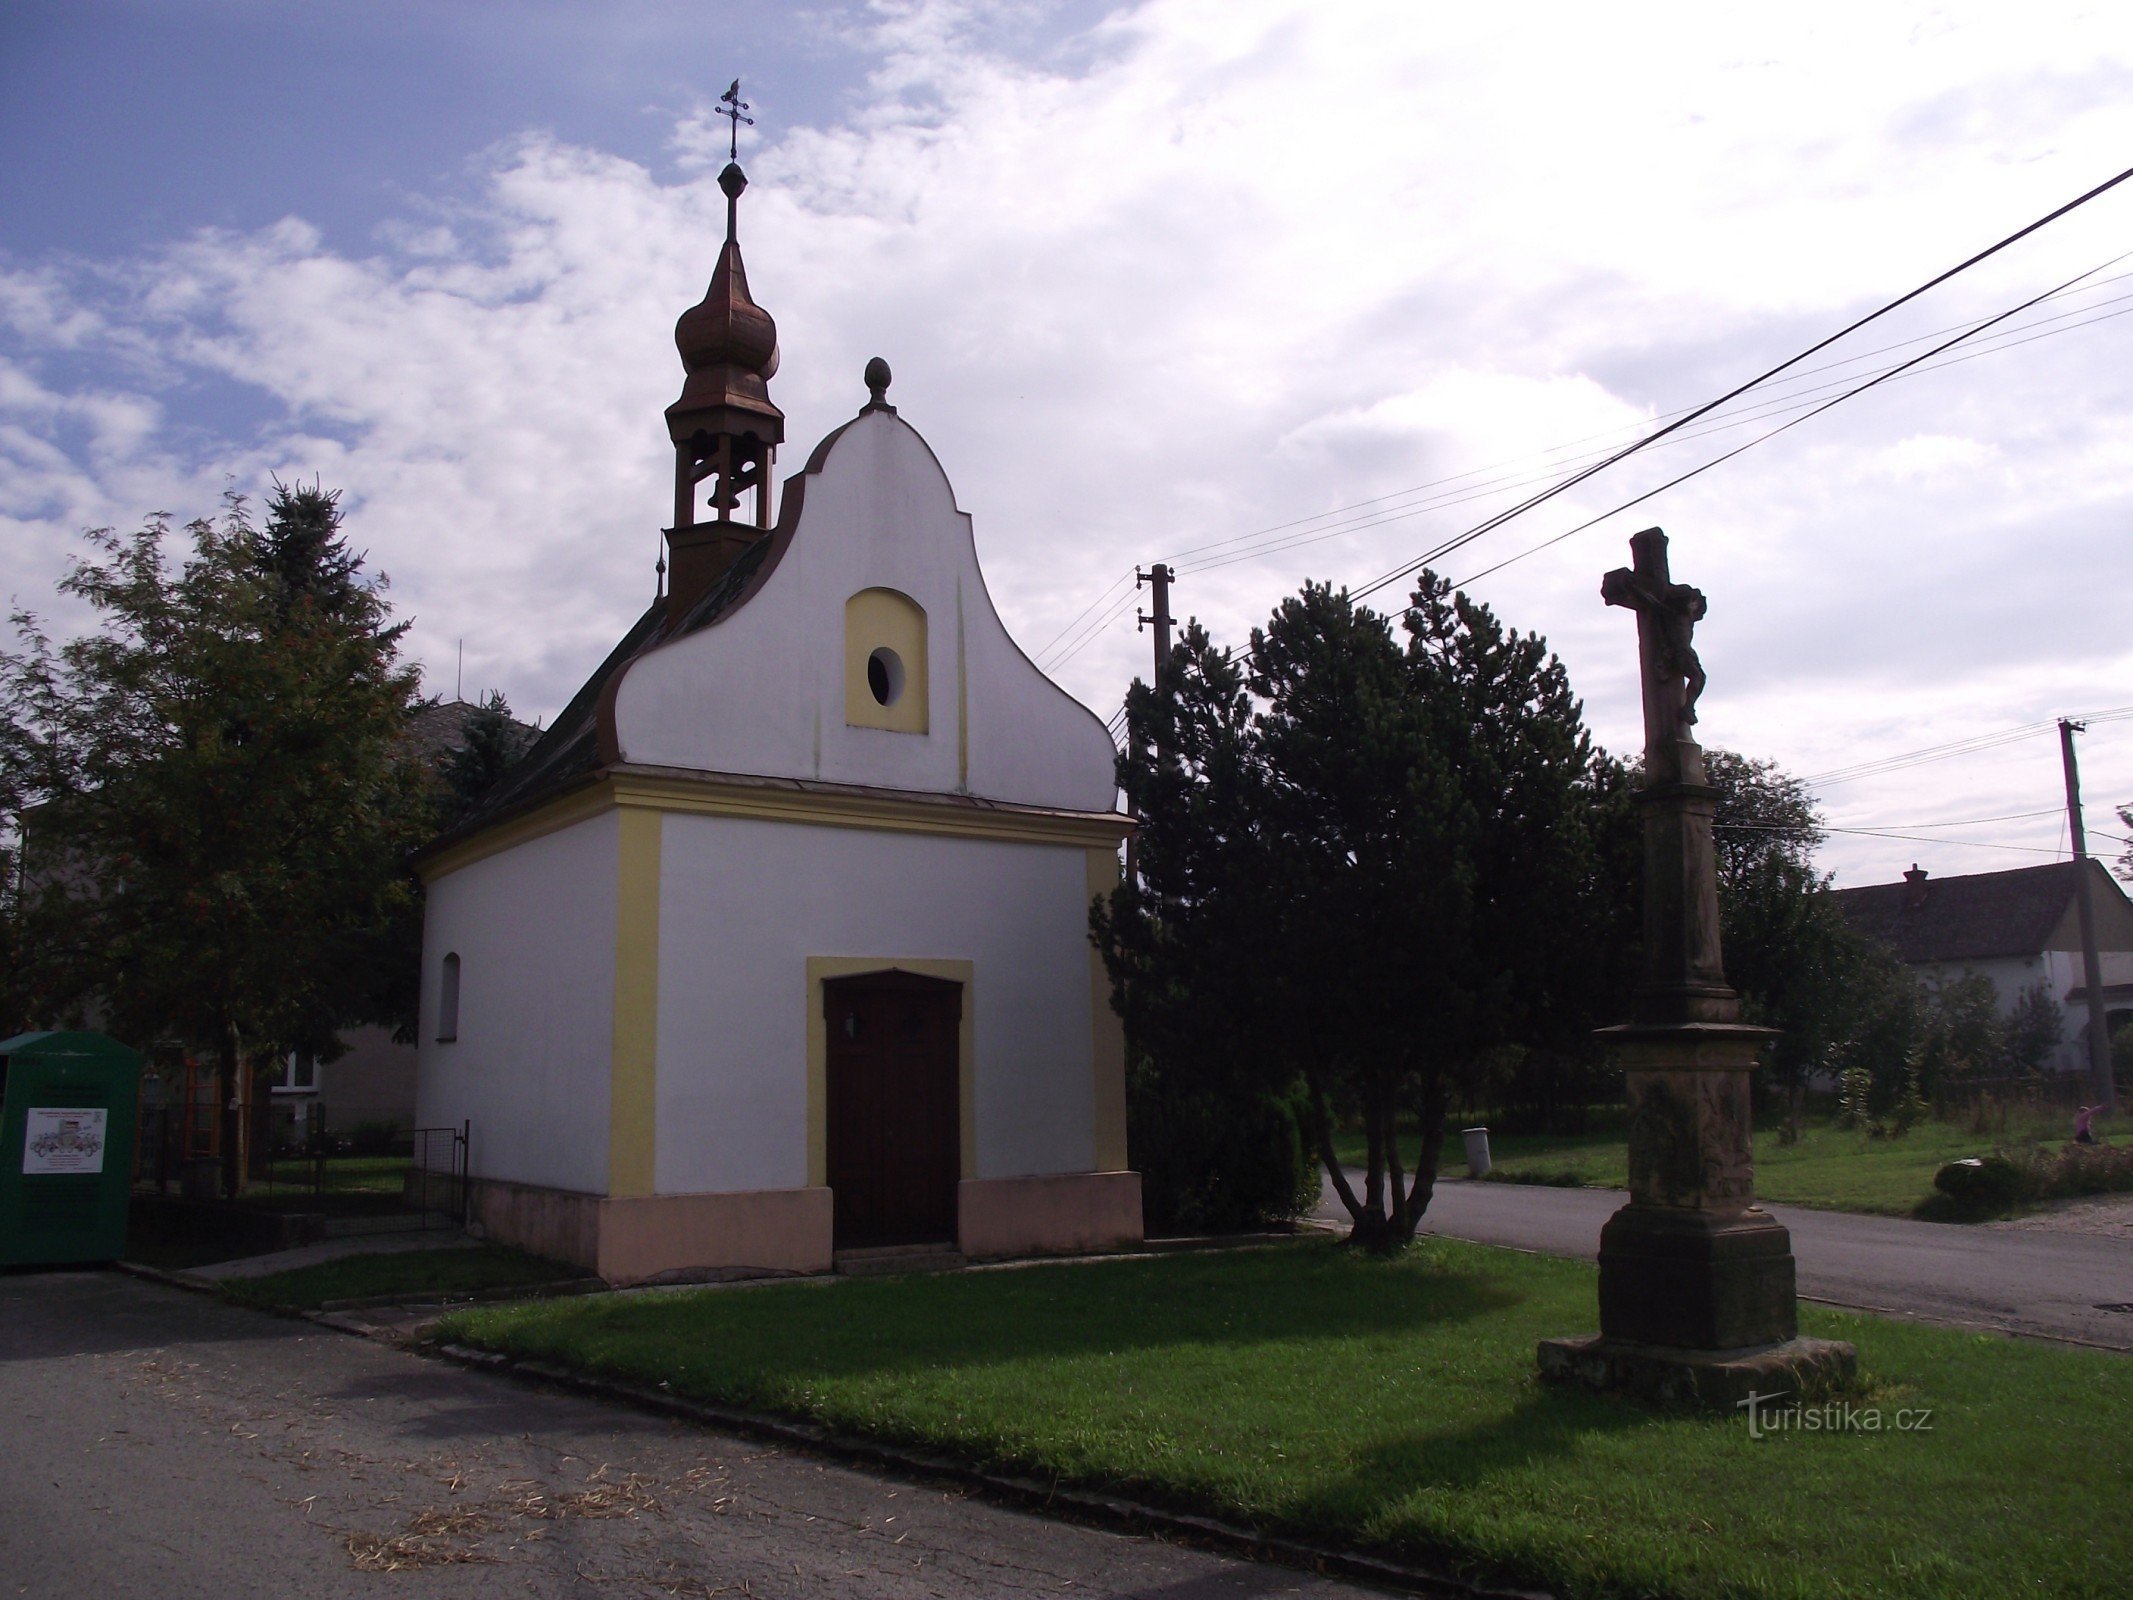 Doubravice (Moravičany) - kapel van de Heilige Drie-eenheid